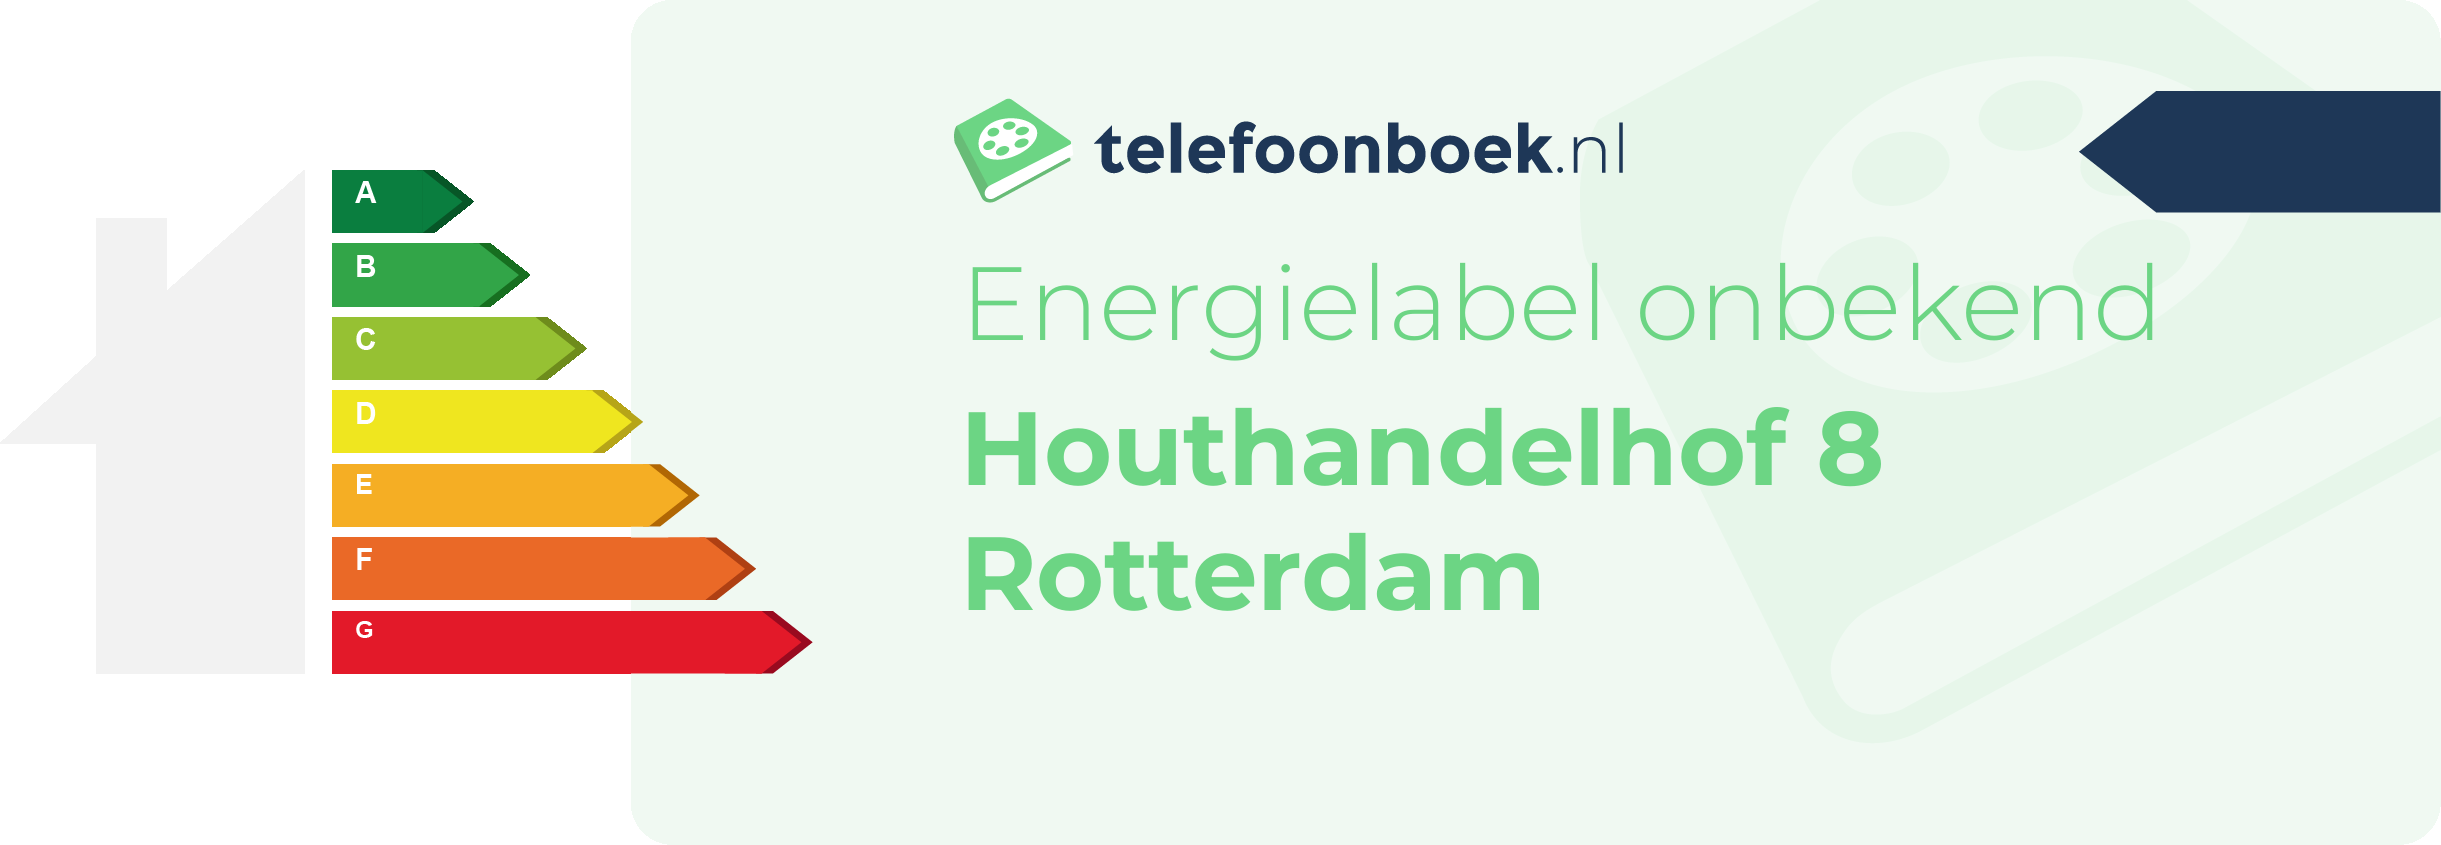 Energielabel Houthandelhof 8 Rotterdam